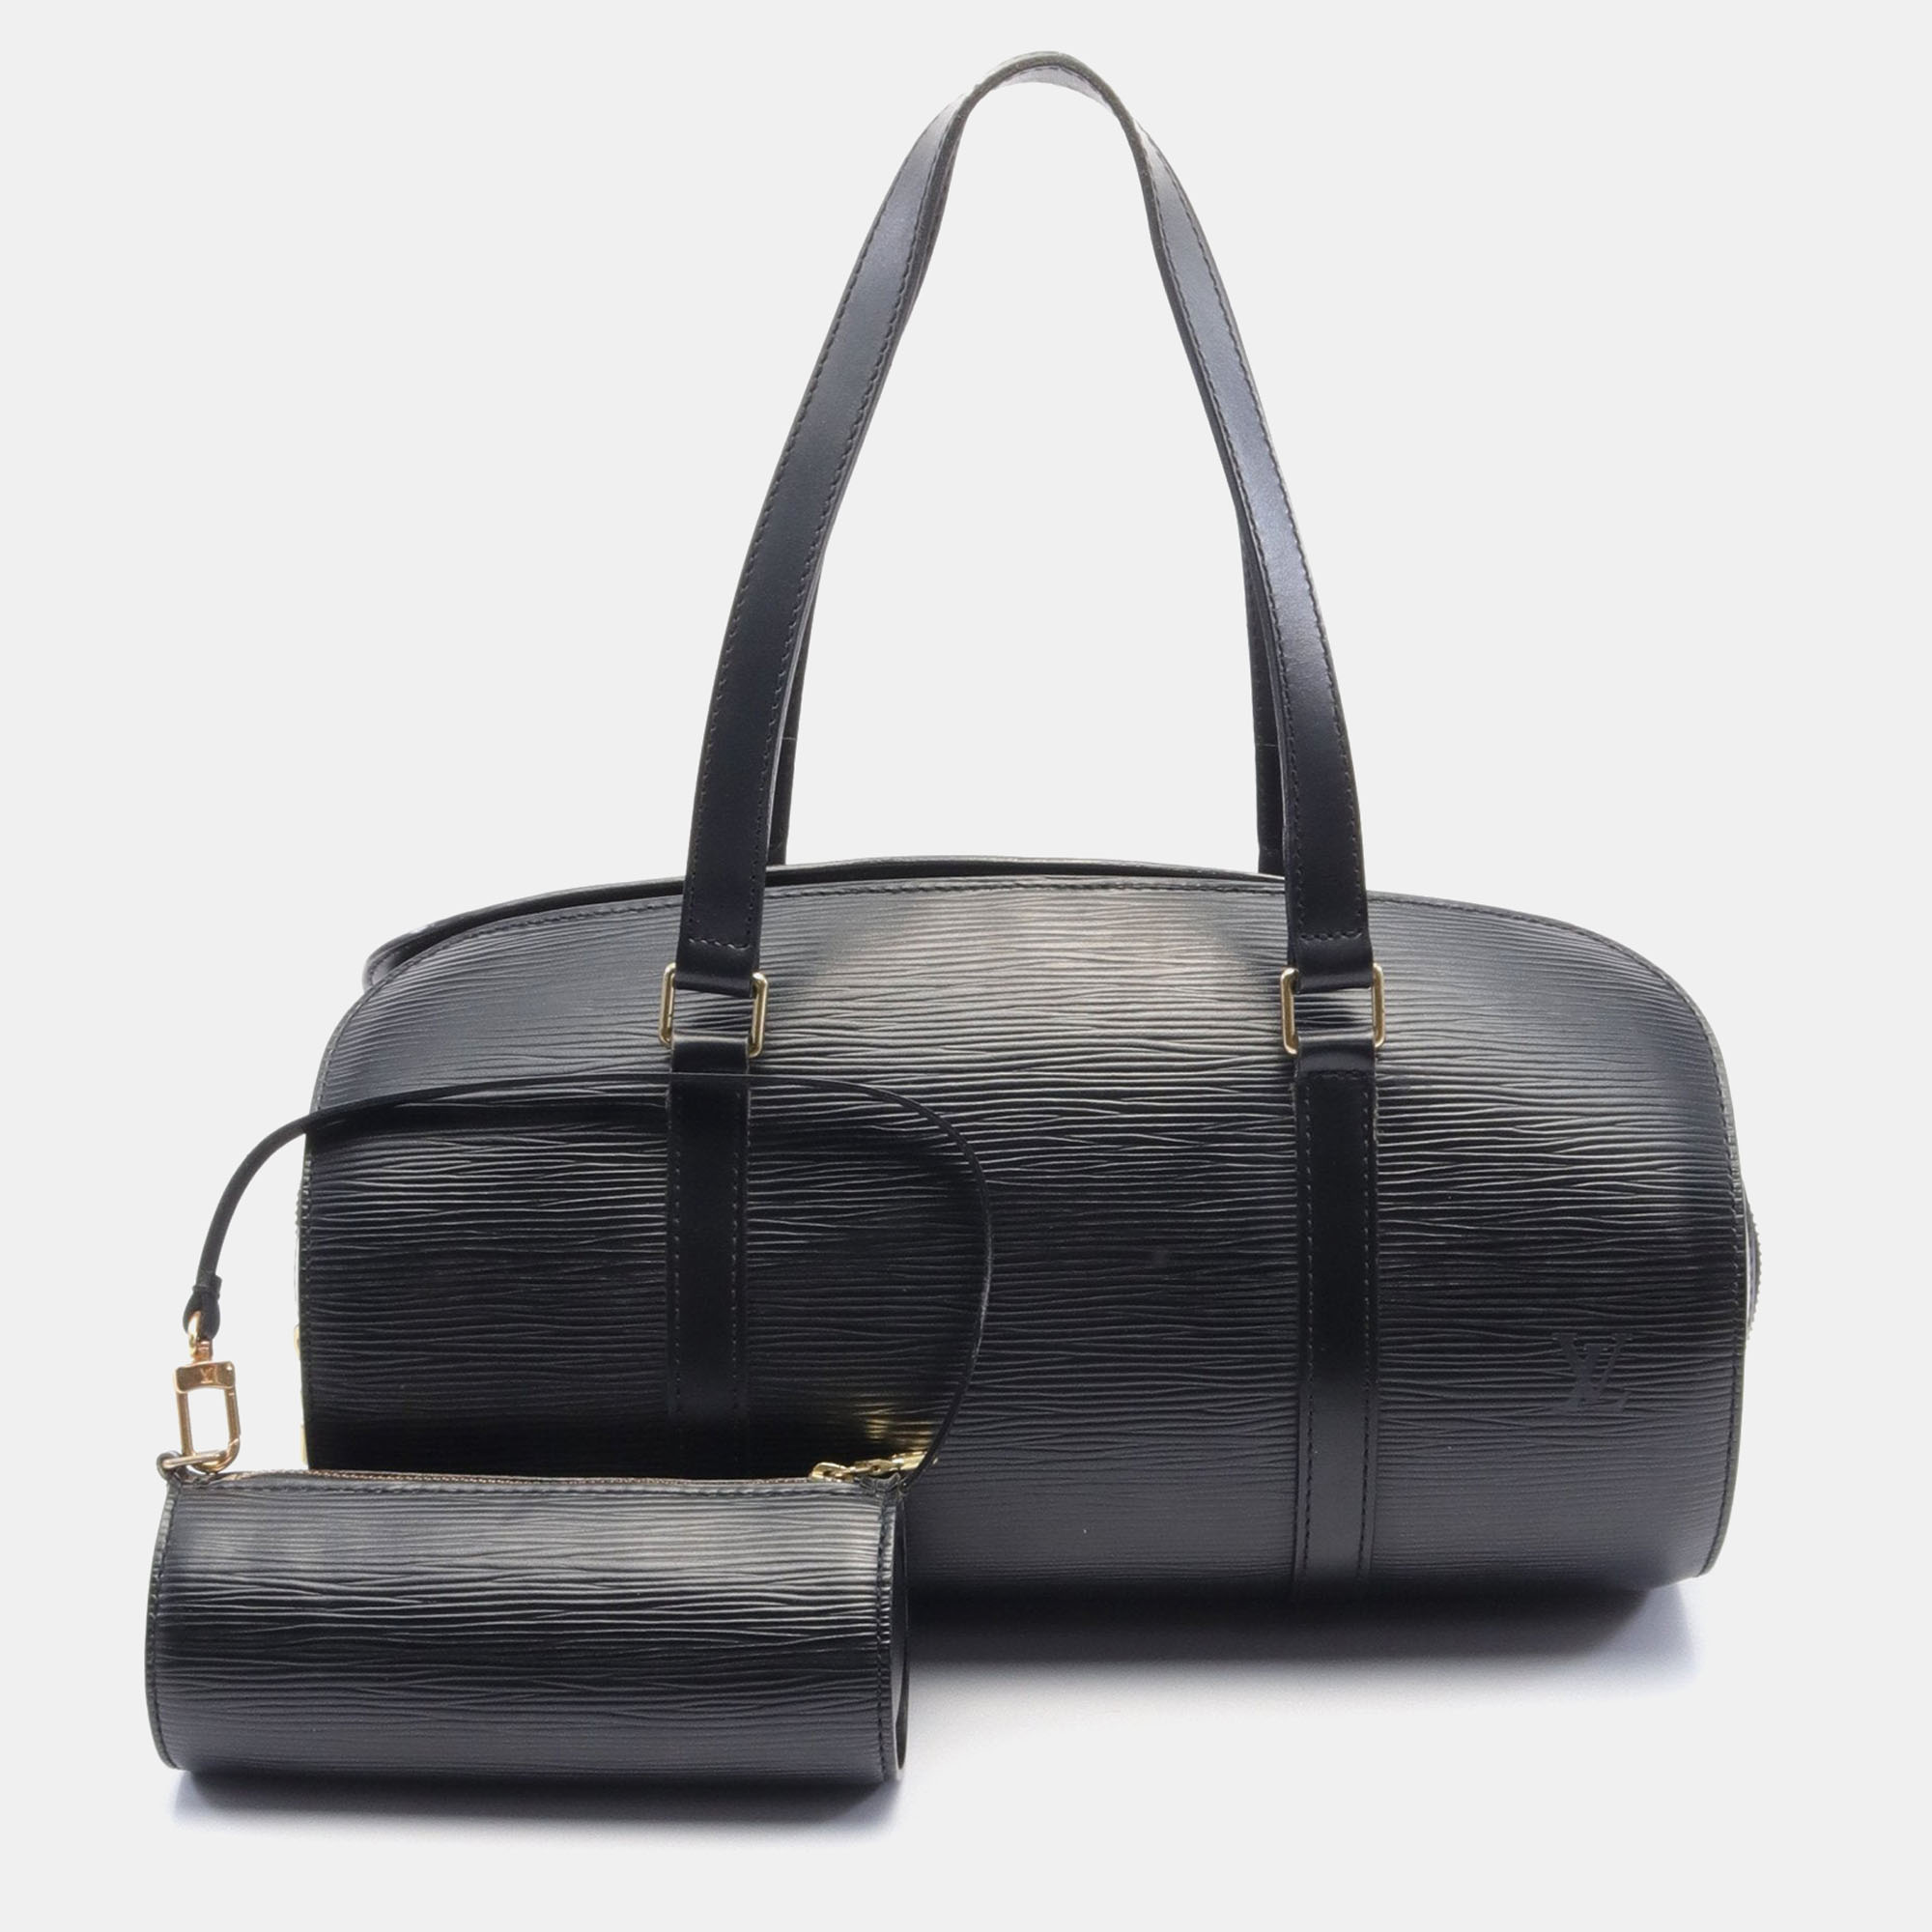 Louis vuitton soufflot epi noir handbag leather black